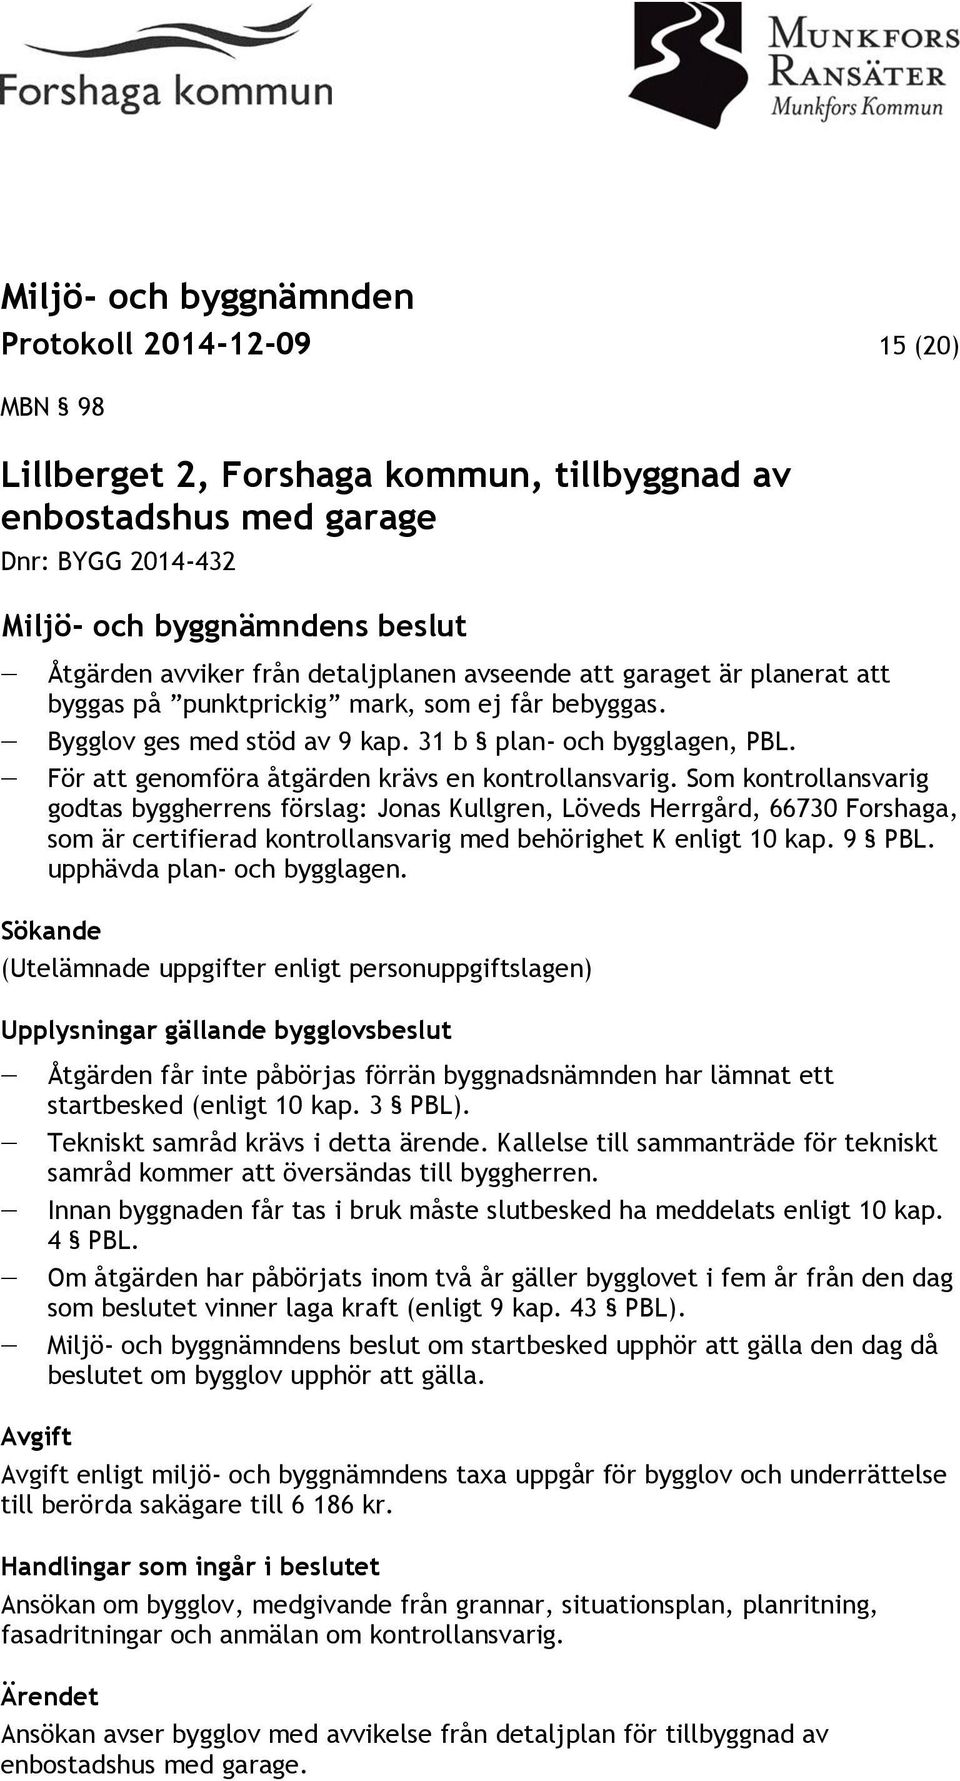 Som kontrollansvarig godtas byggherrens förslag: Jonas Kullgren, Löveds Herrgård, 66730 Forshaga, som är certifierad kontrollansvarig med behörighet K enligt 10 kap. 9 PBL.